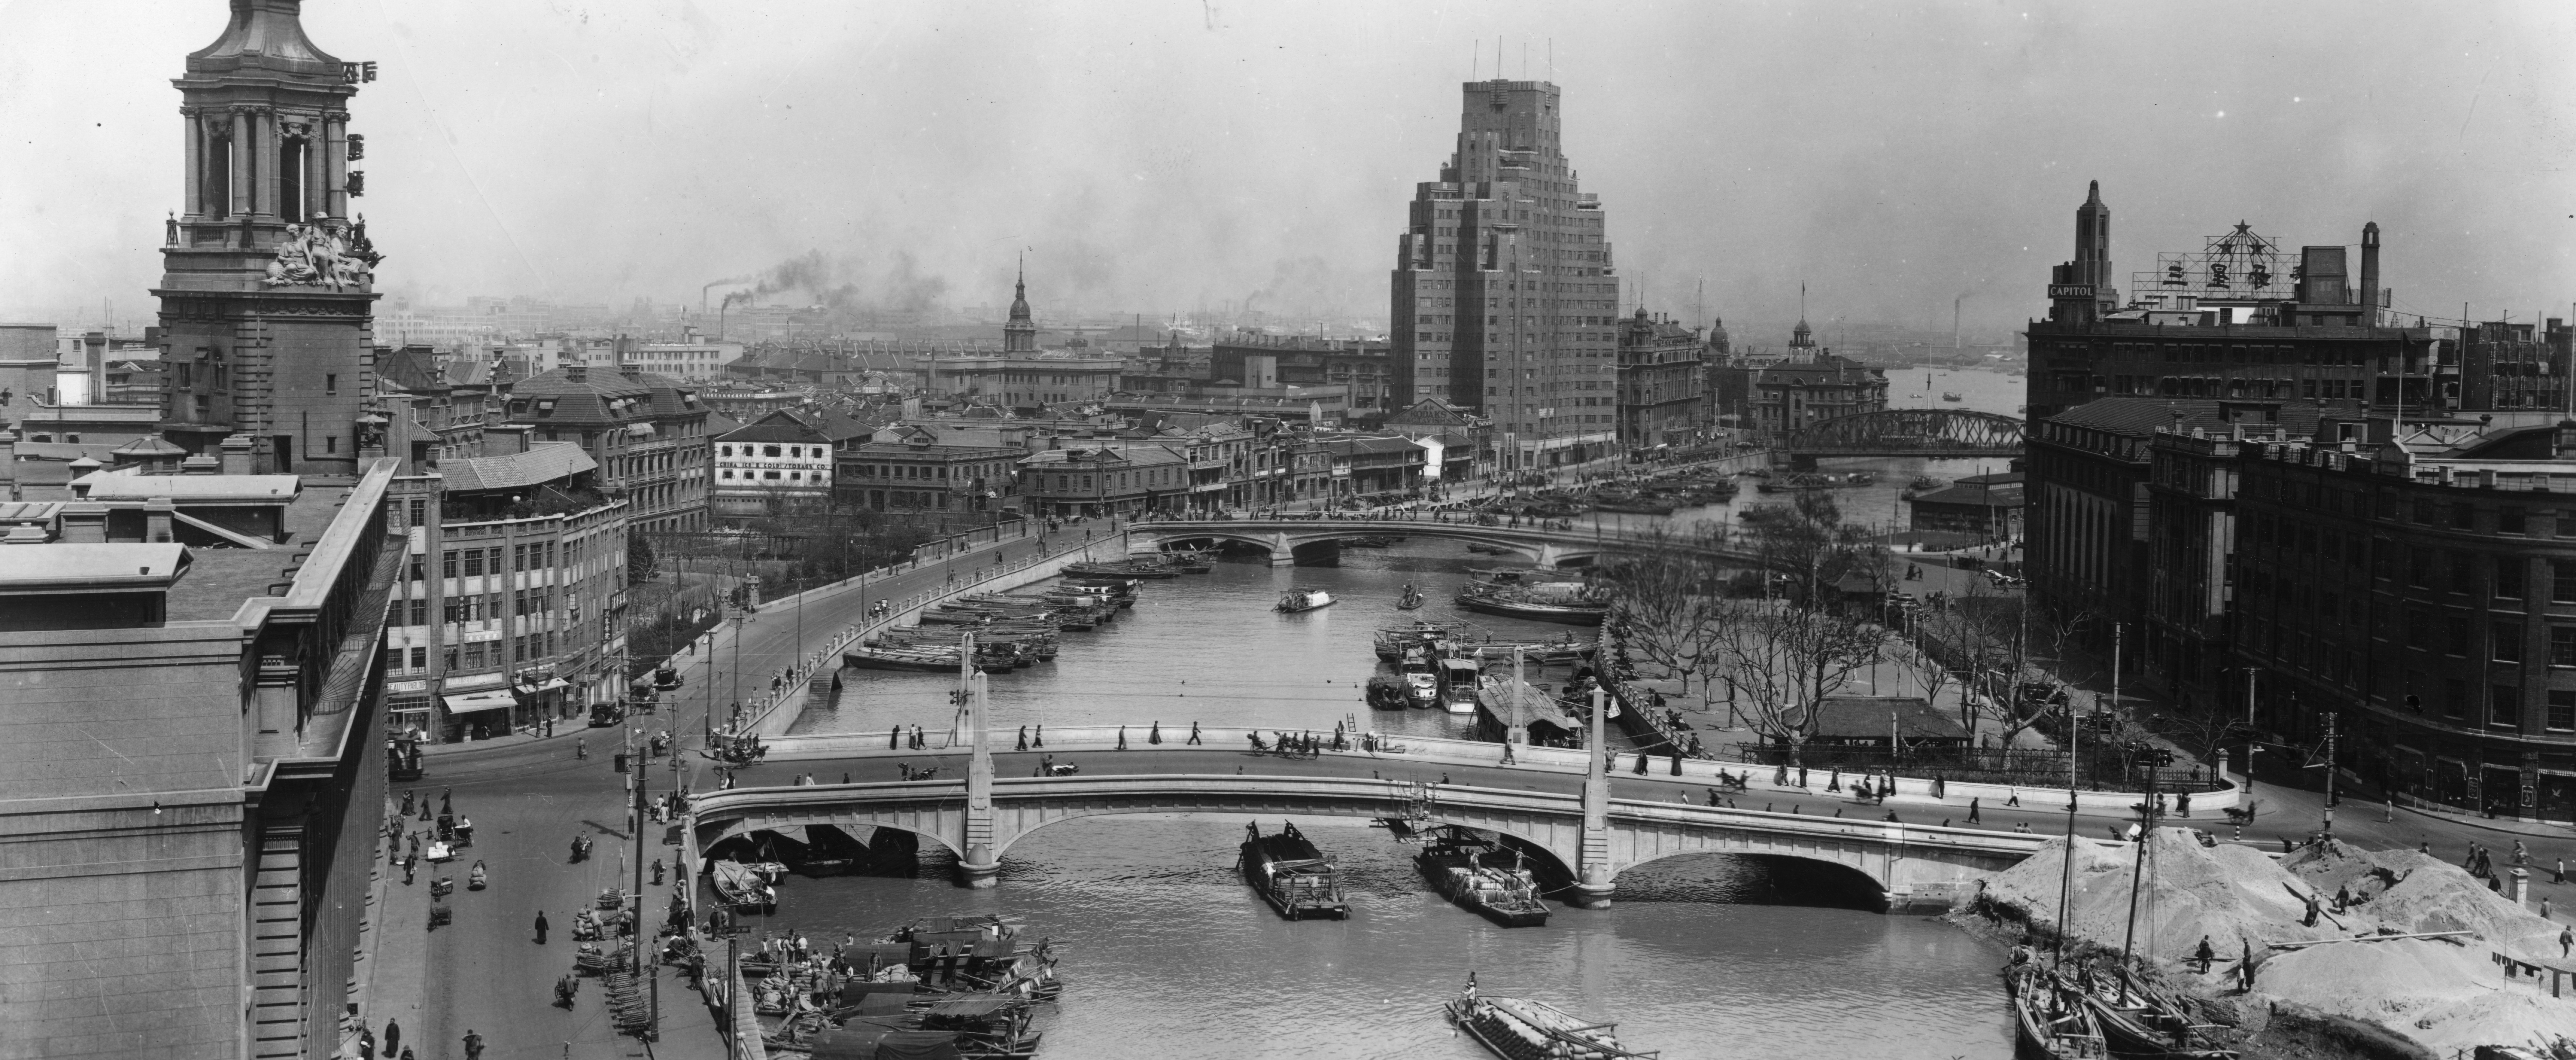 Shanghai 1930s The River Embankment Wallpaper